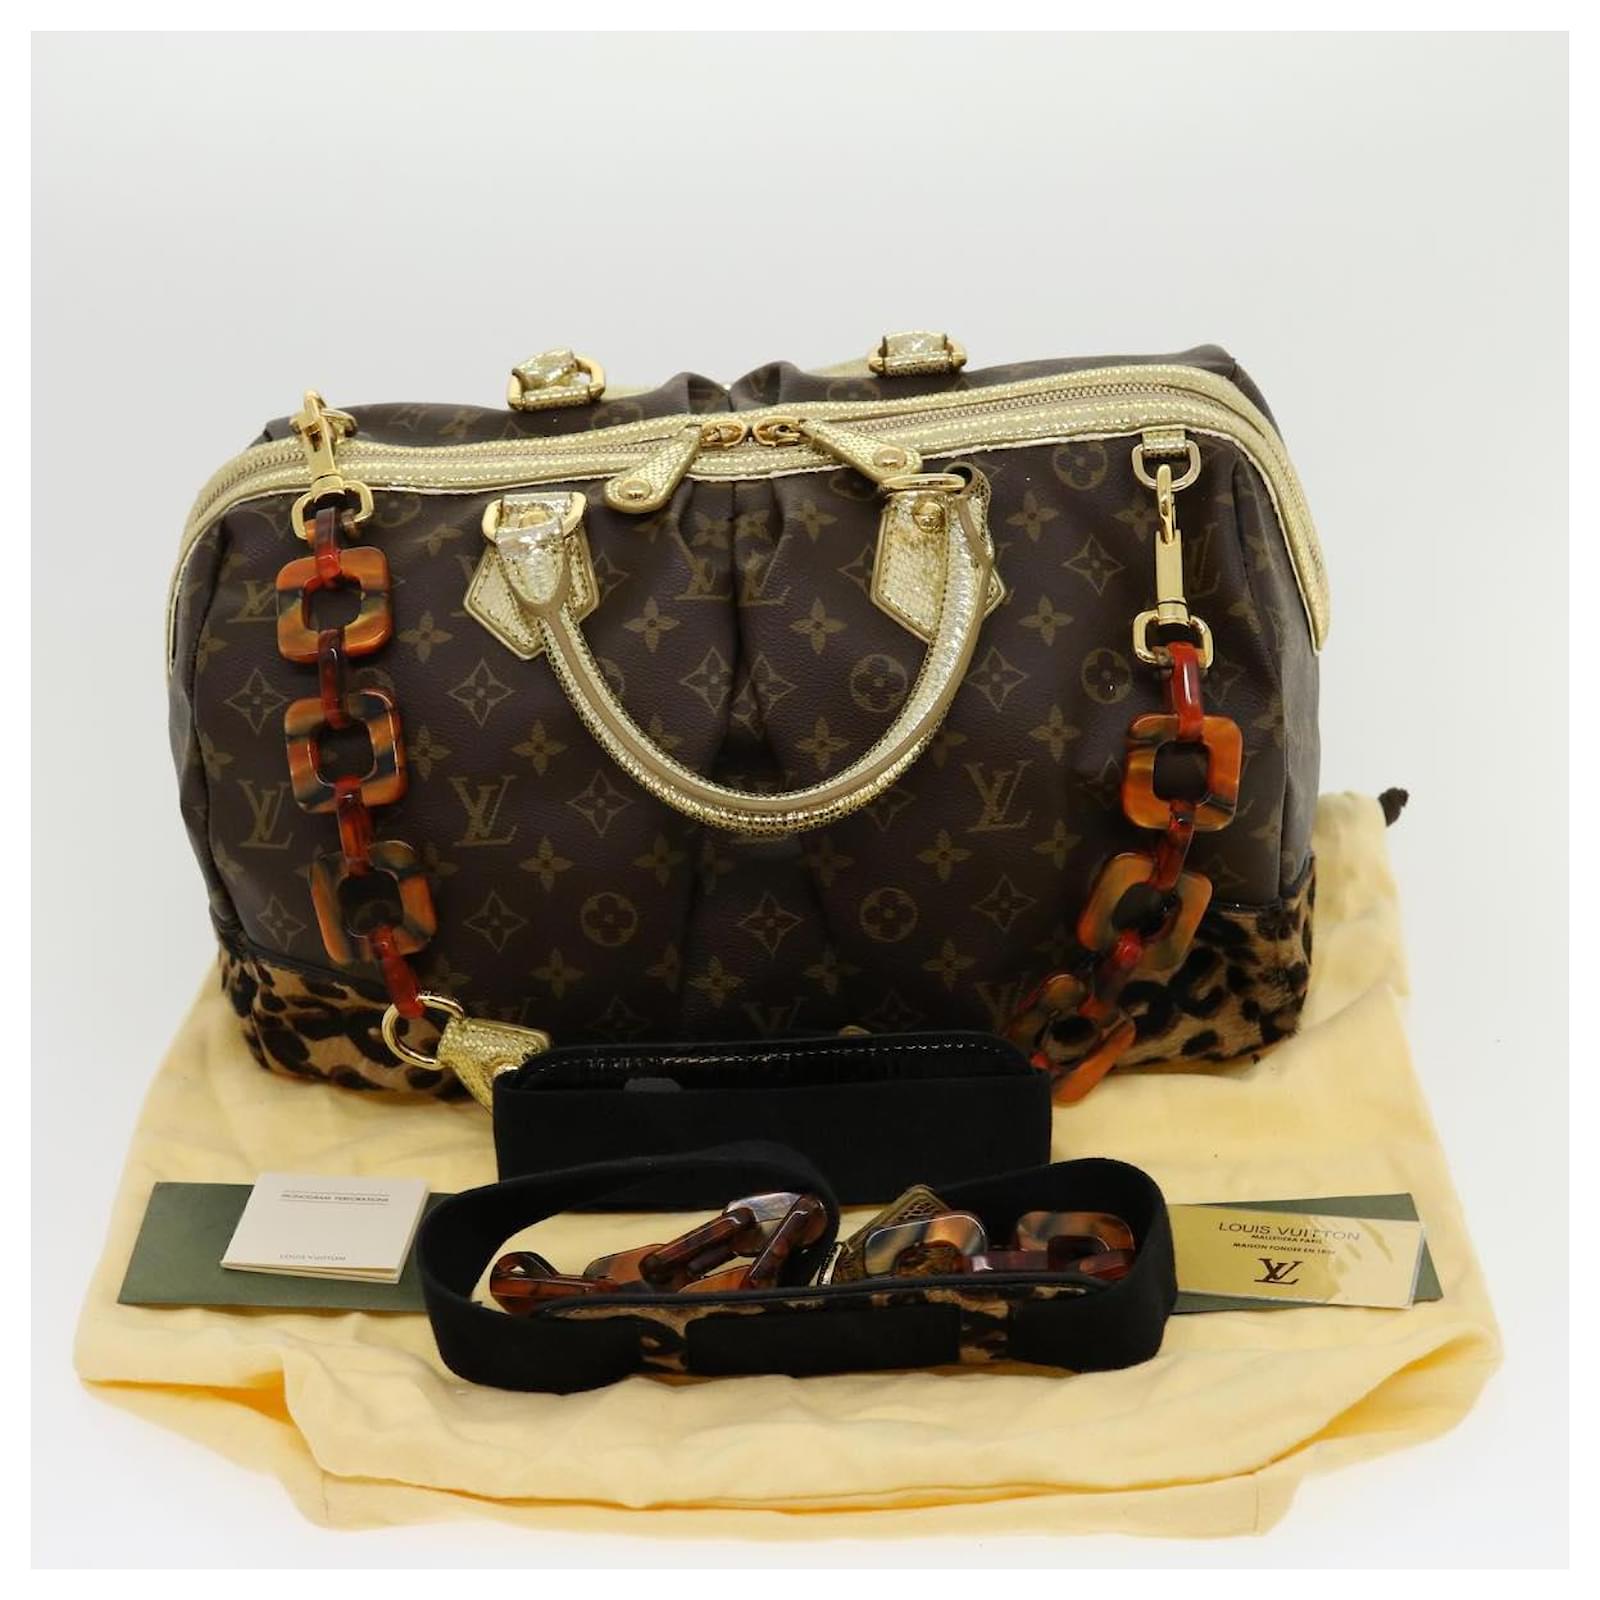 Handbags Louis Vuitton Louis Vuitton Monogram Alma Voyage mm Hand Bag M41446 LV Auth knn080